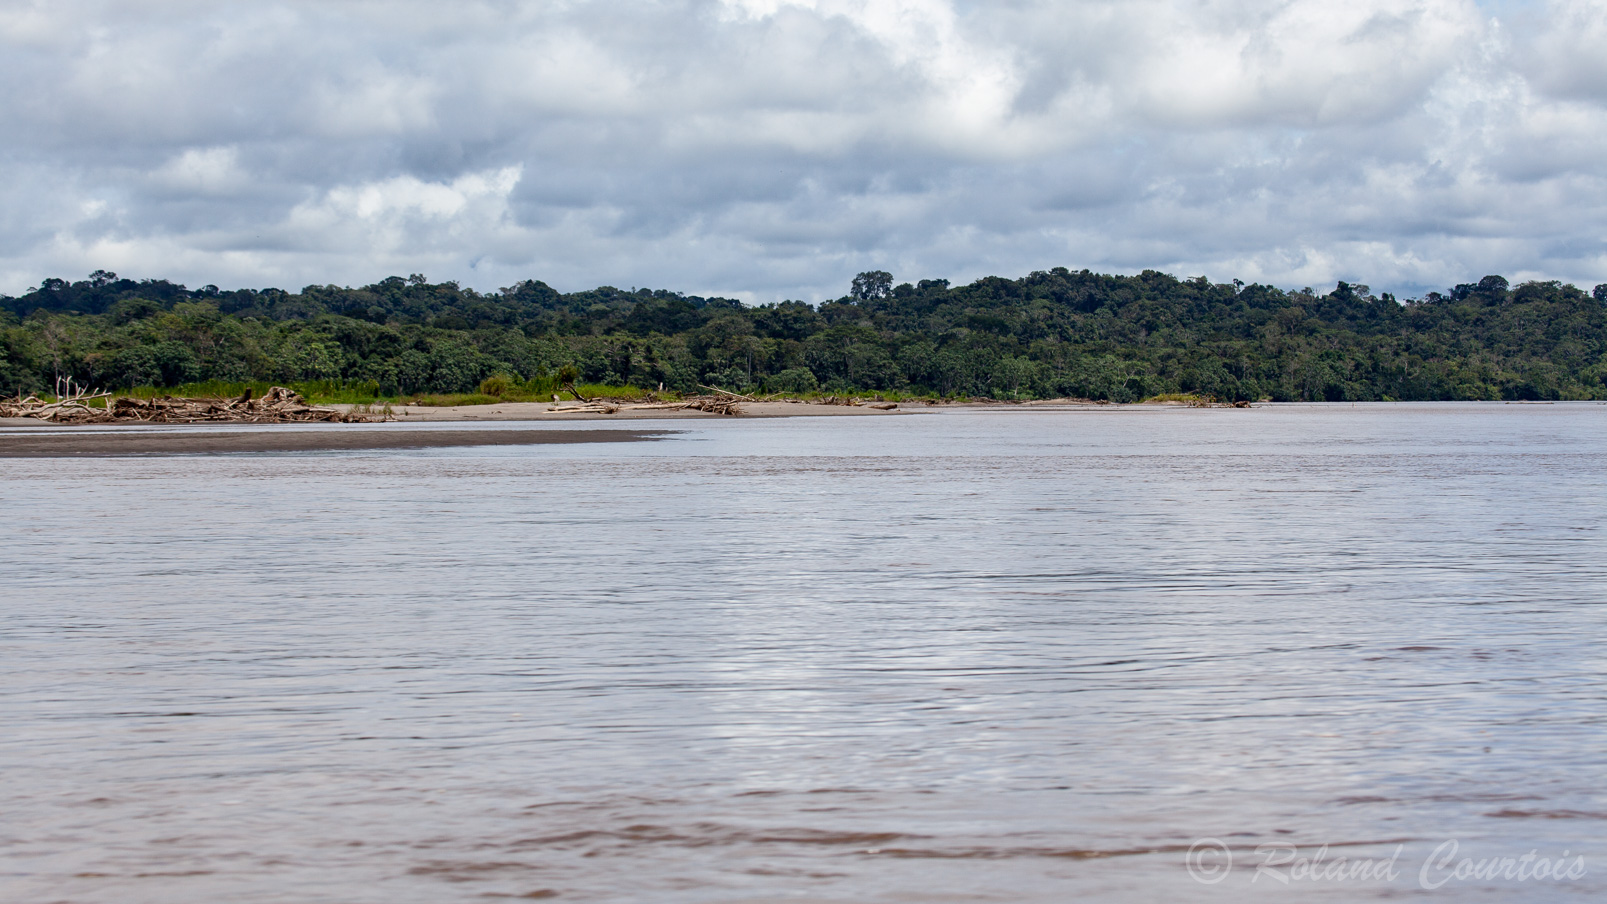 Déjà la rivière Napo est très large et pourtant nous sommes encore au tout début de cette région amazoniènne, comment doit-être alors l'Amazone ?